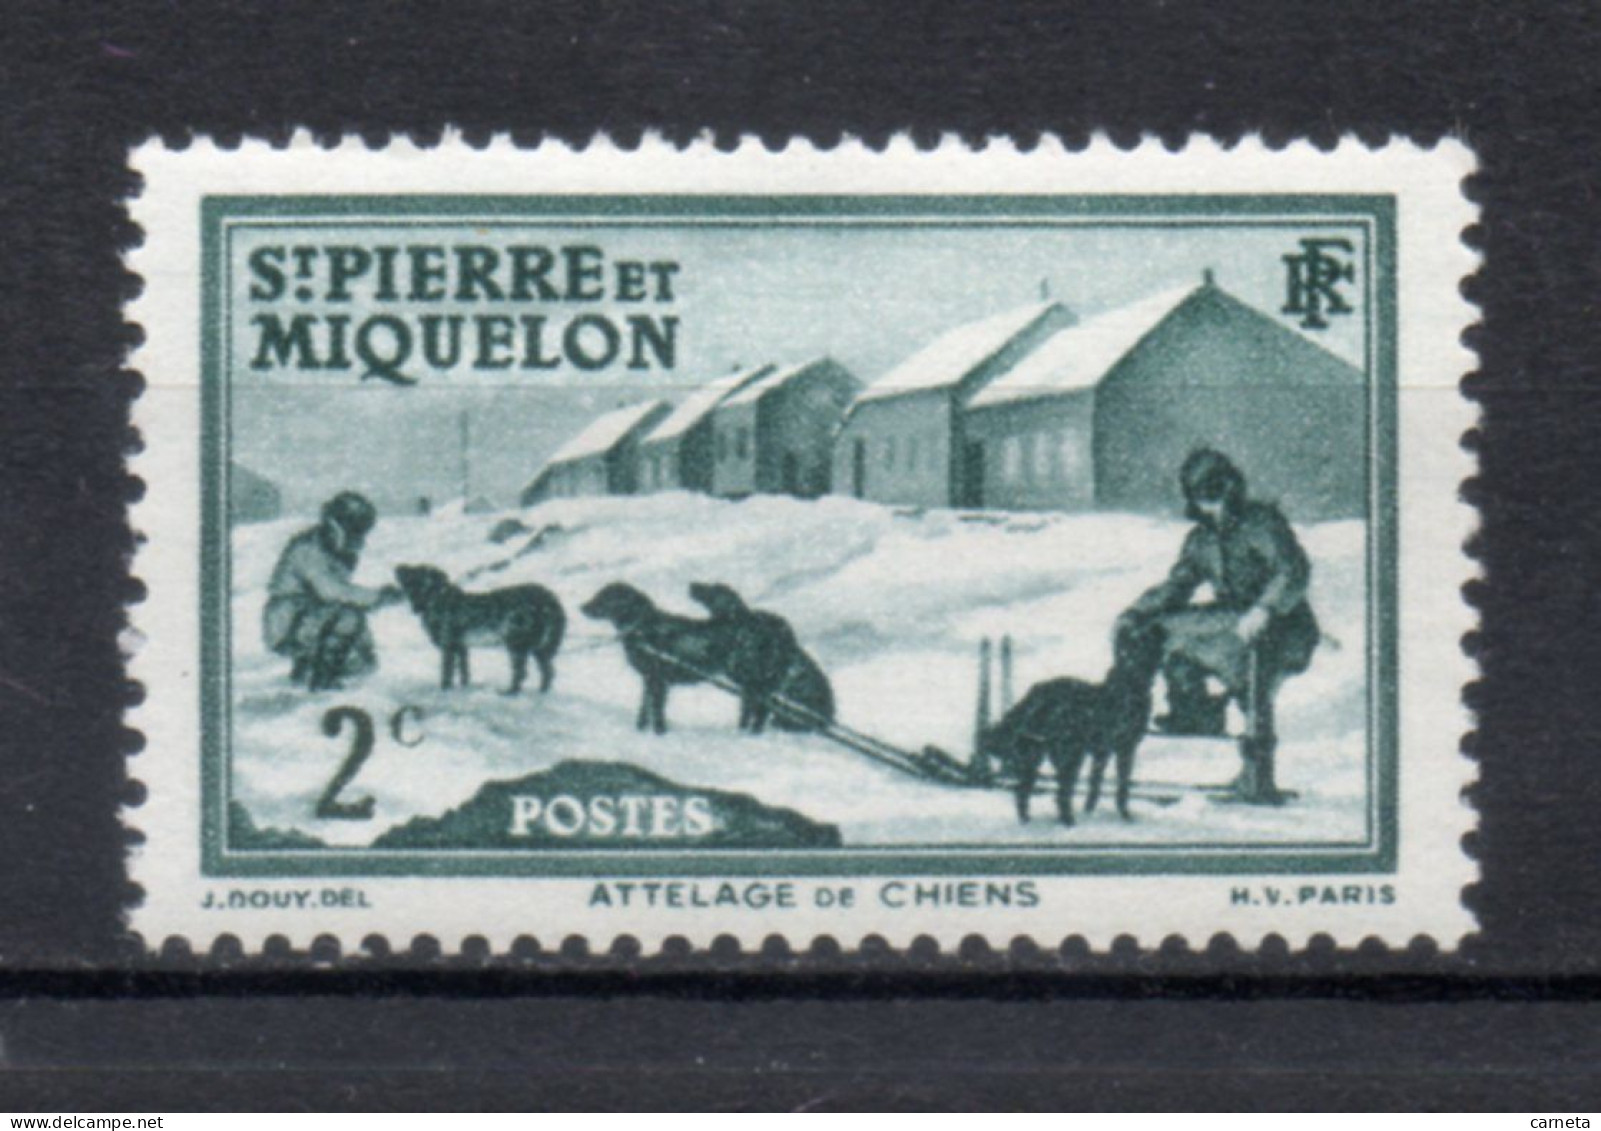 SAINT PIERRE ET MIQUELON N° 167   NEUF SANS CHARNIERE COTE  0.75€   ATTELAGE CHIEN ANIMAUX - Unused Stamps